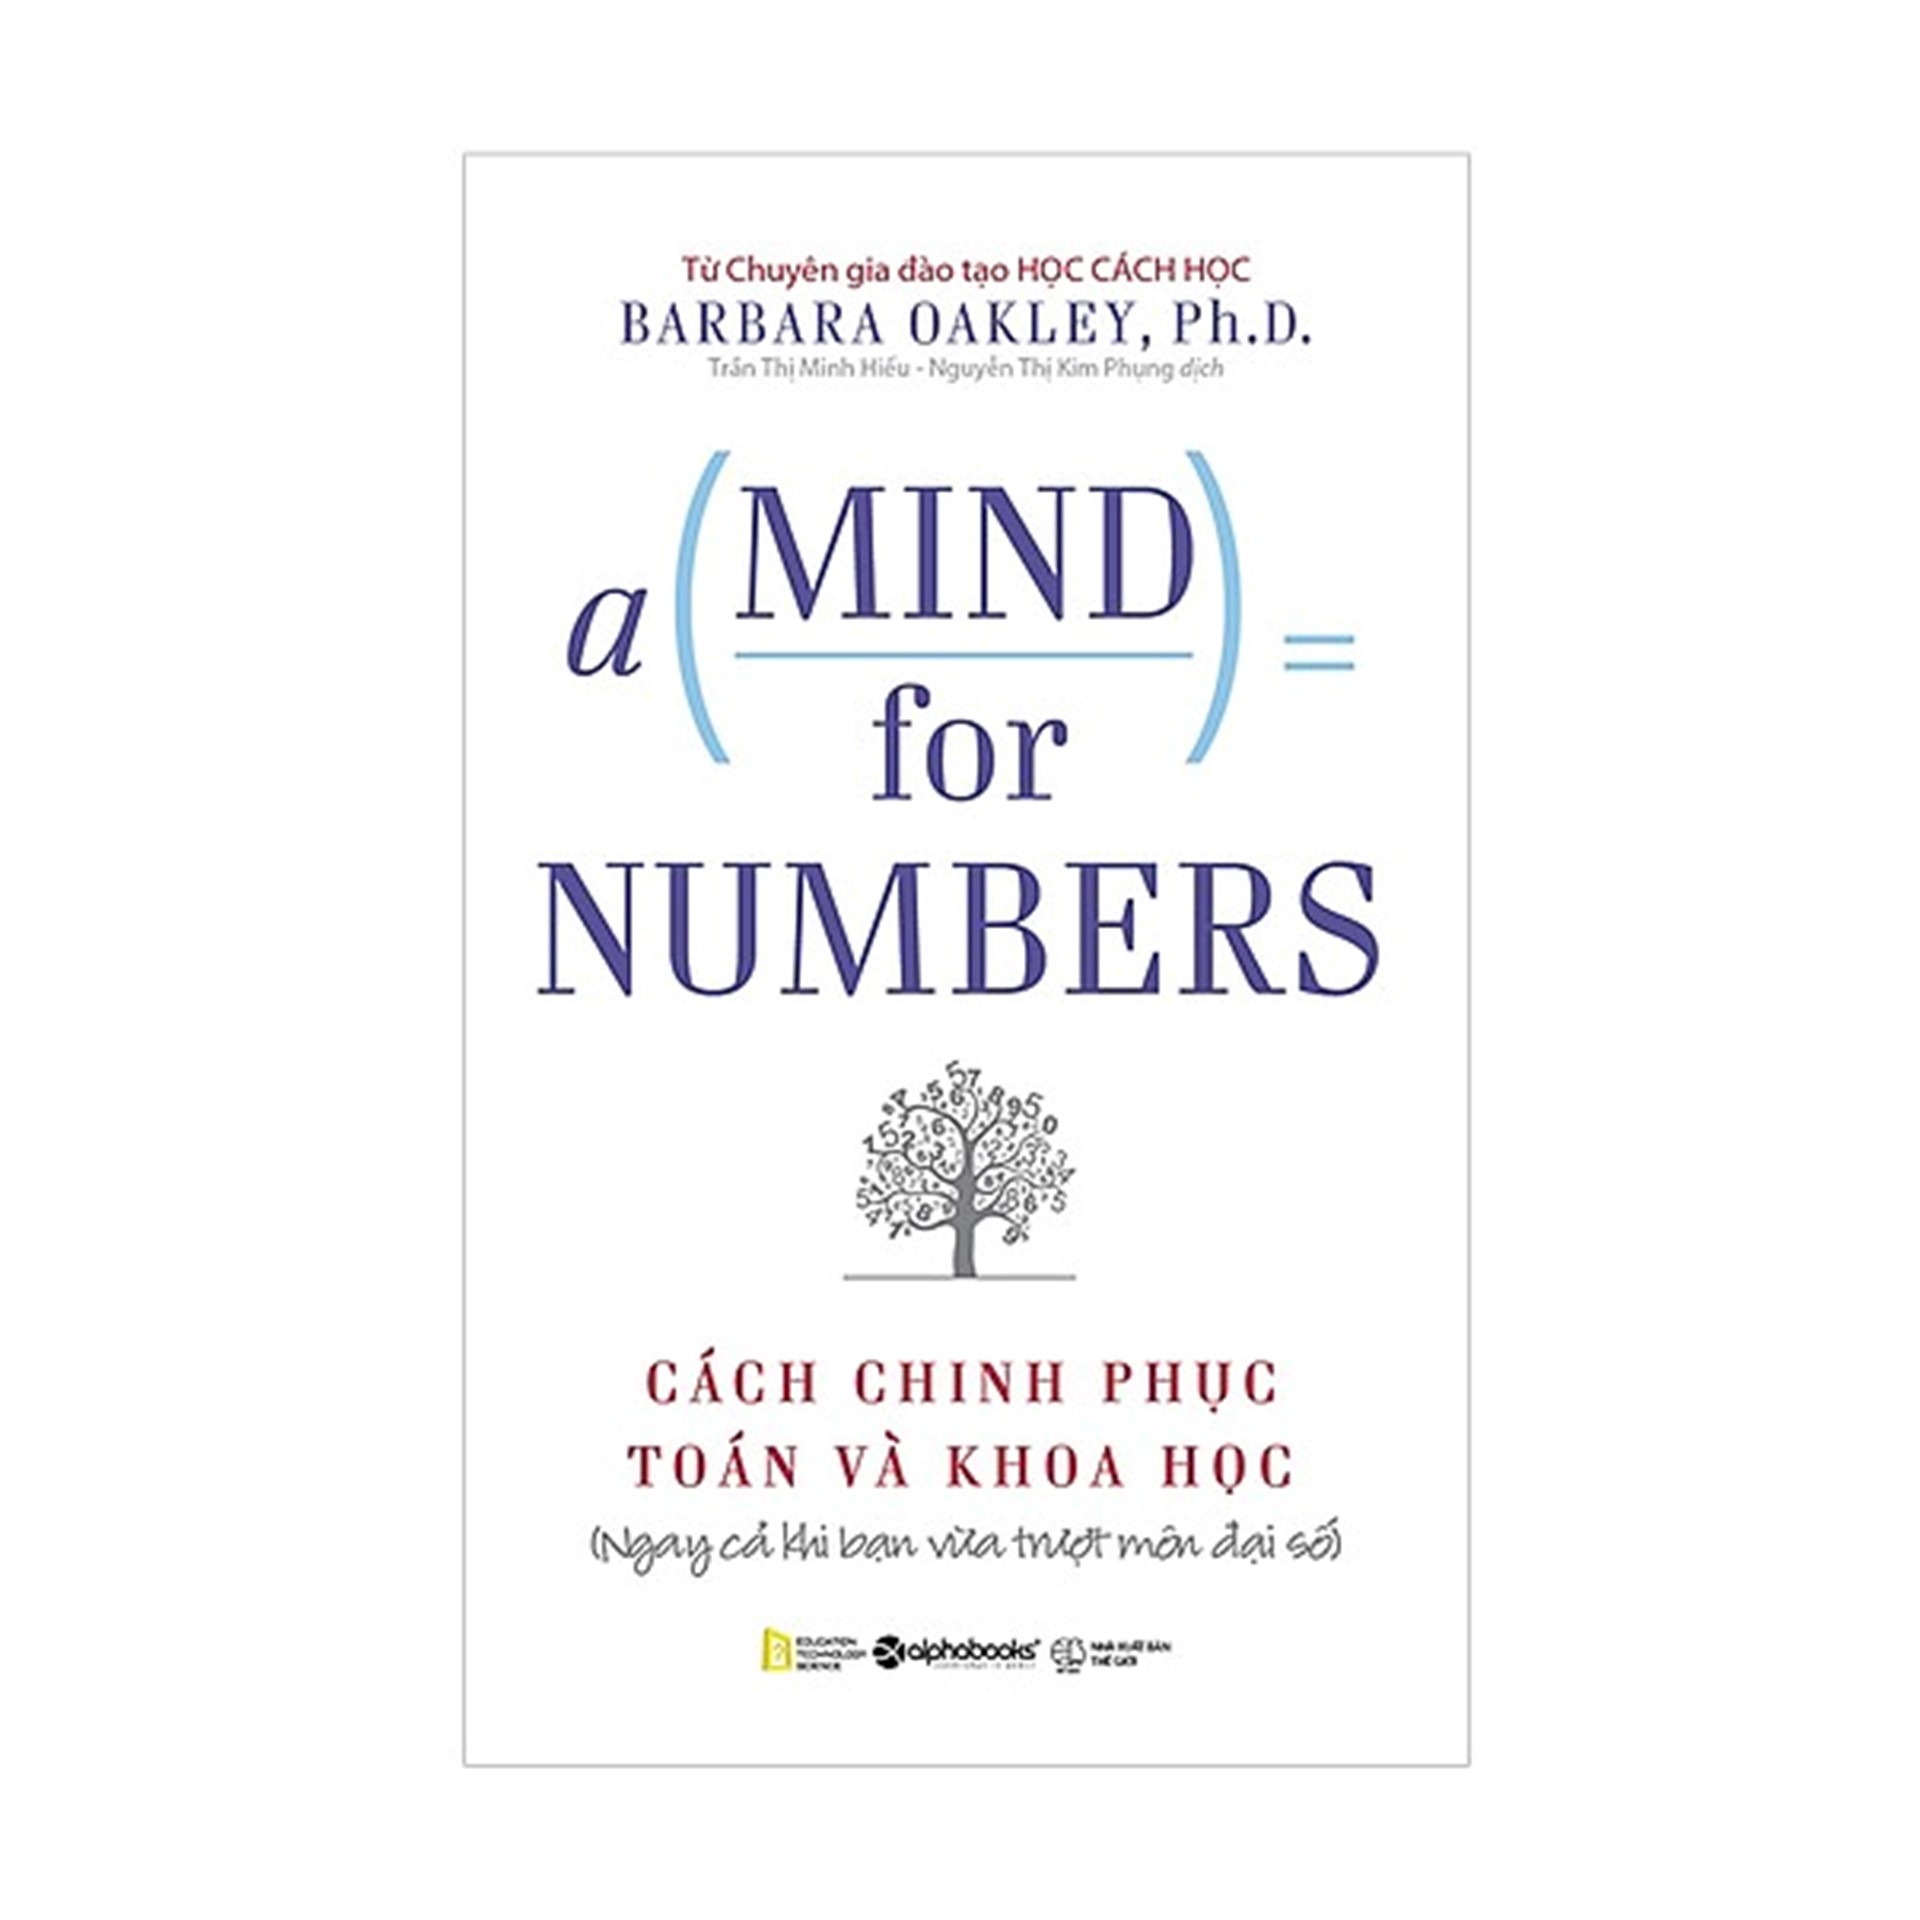 Combo Sách Hay Về Toán Học : Những Câu Hỏi Lớn - Toán Học + A Mind For Numbers - Cách Chinh Phục Toán Và Khoa Học